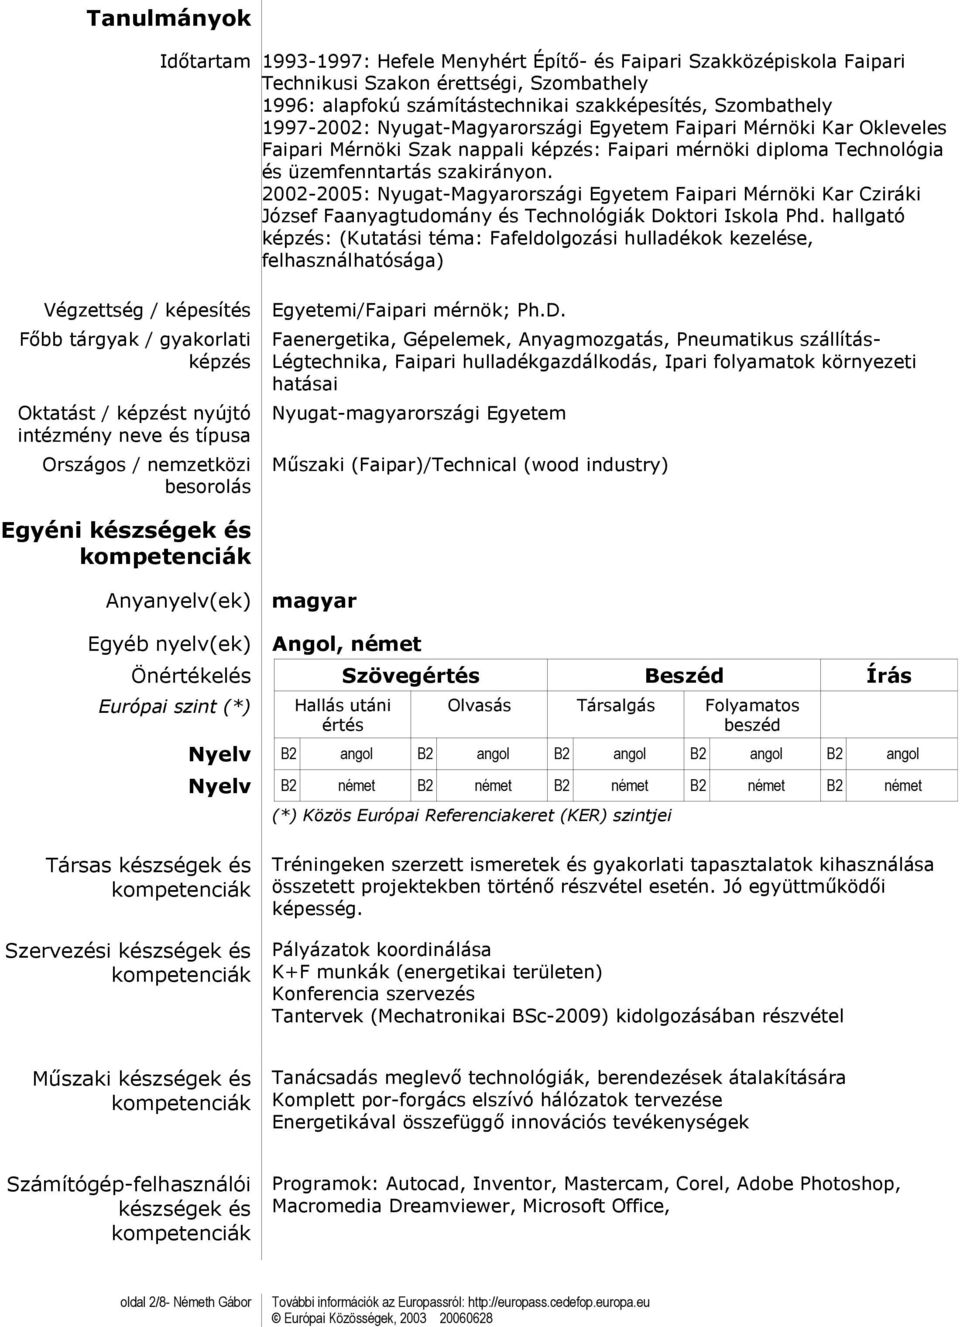 2002-2005: Nyugat-Magyarországi Egyetem Faipari Mérnöki Kar Cziráki József Faanyagtudomány és Technológiák Doktori Iskola Phd.